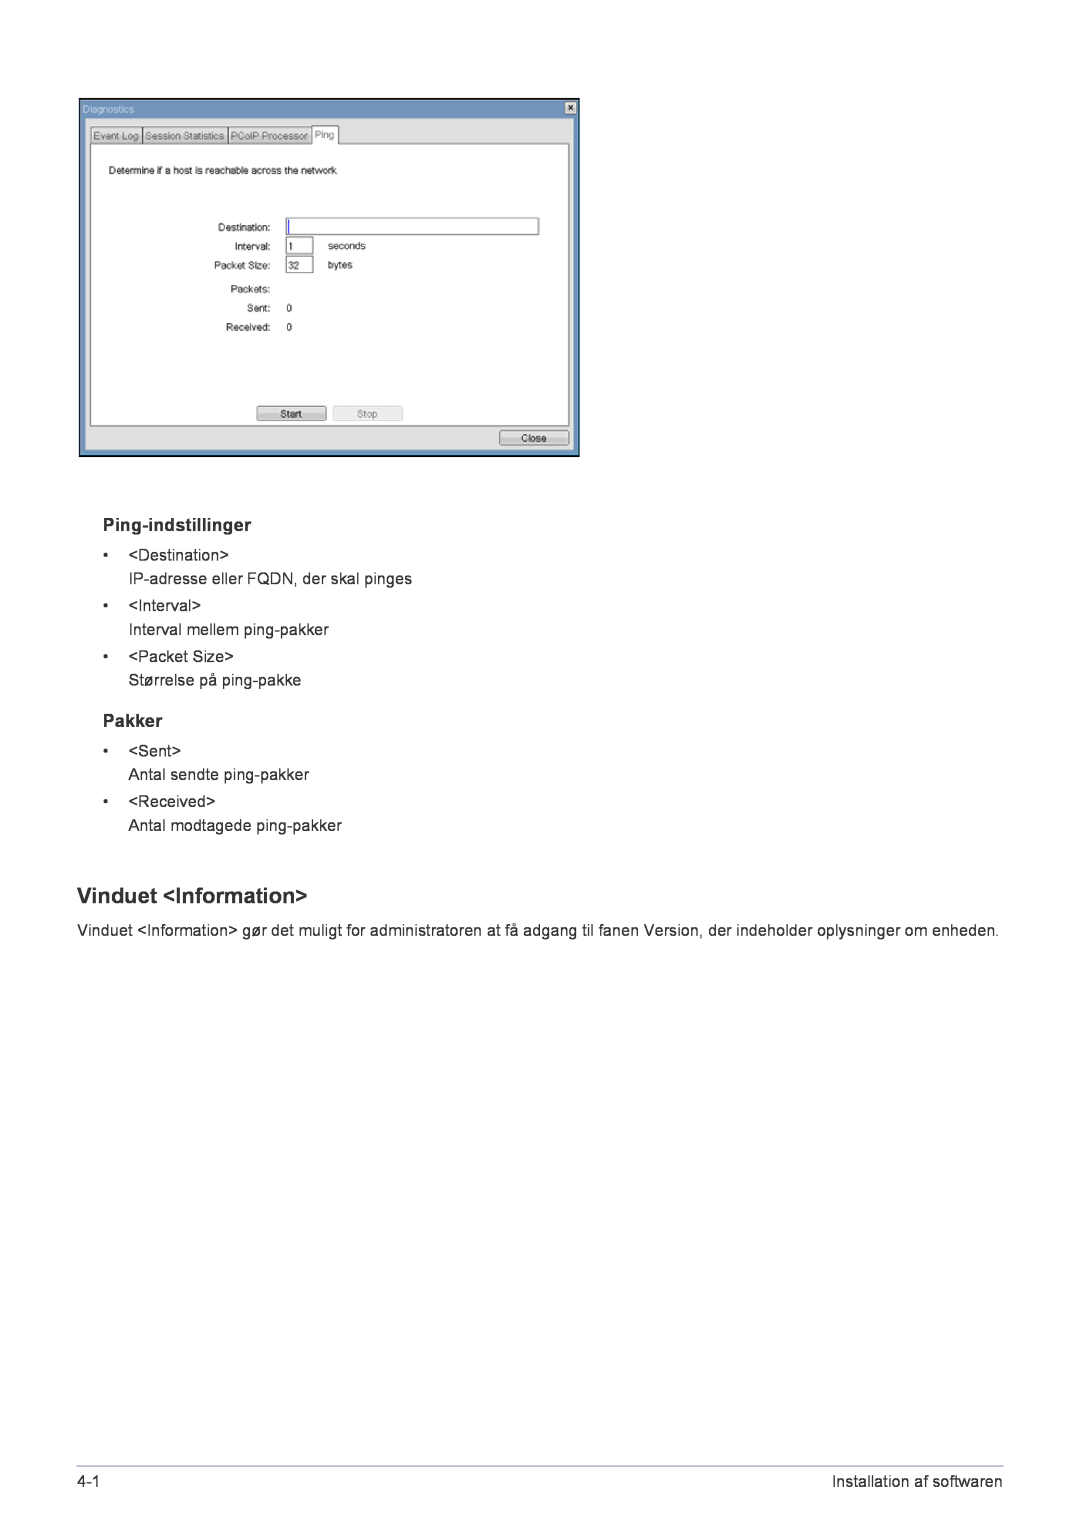 Samsung LF22NPBHBNP/EN manual Vinduet Information, Ping-indstillinger, Pakker, Installation af softwaren 